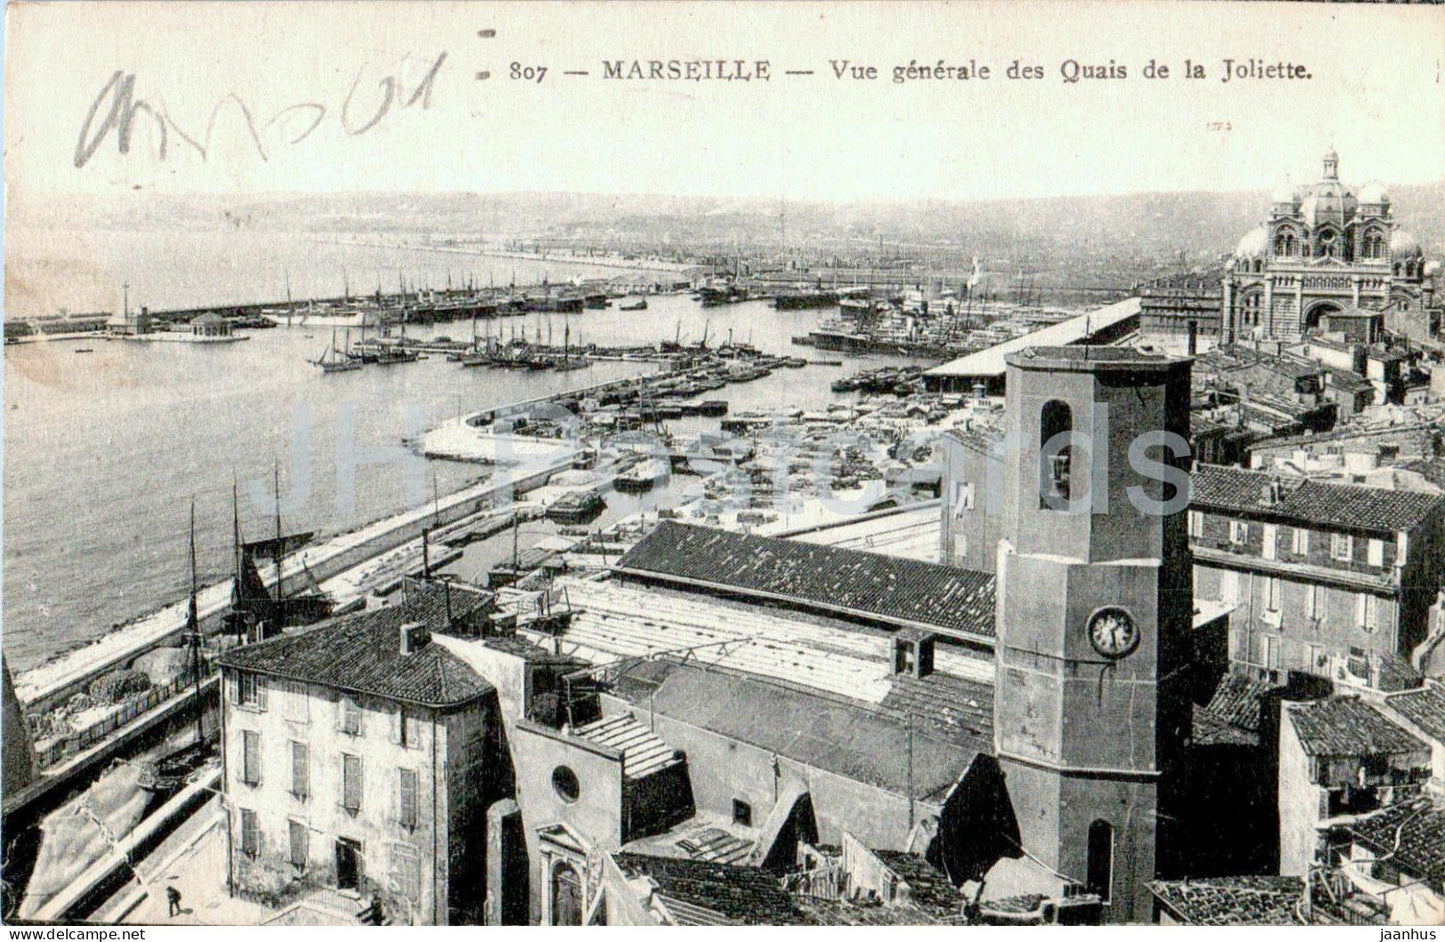 Marseille - Vue generale des Quais de la Joliette - 807 - old postcard - 1933 - France - used - JH Postcards